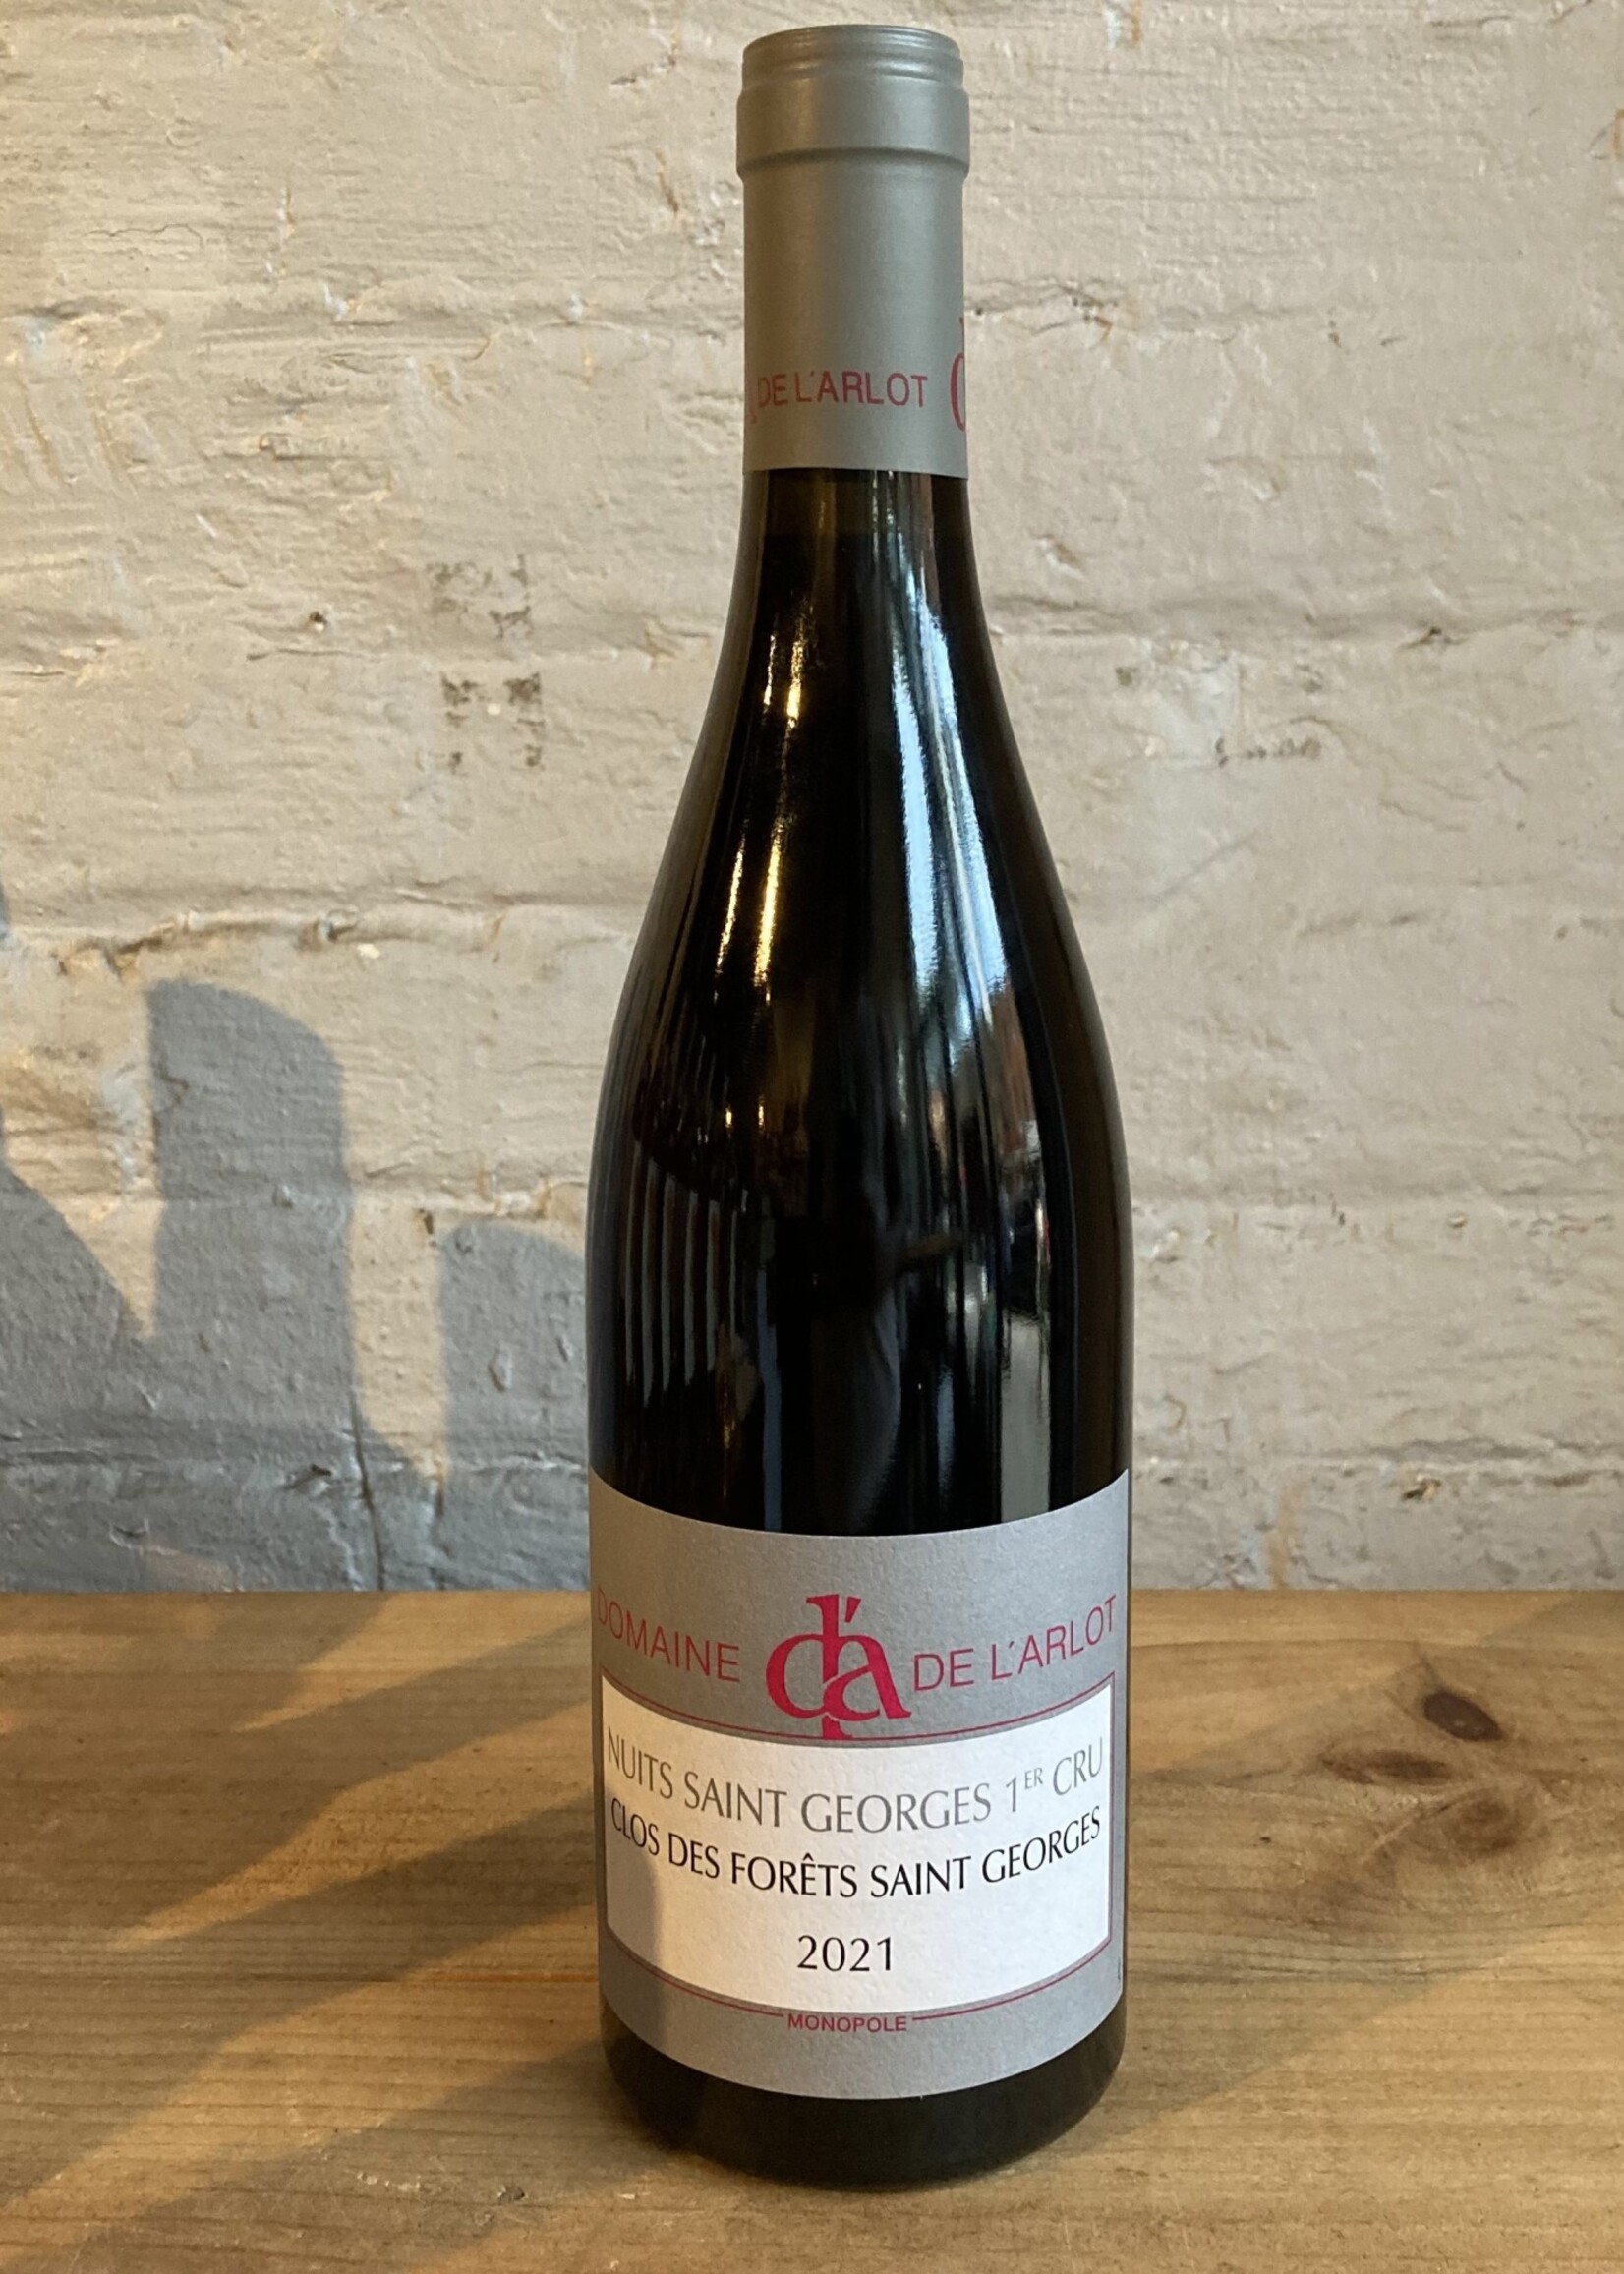 Wine 2021 Domaine de l’Arlot Nuits St Georges 1er Cru Clos des Forets Saint Georges - Burgundy, France (750ml)